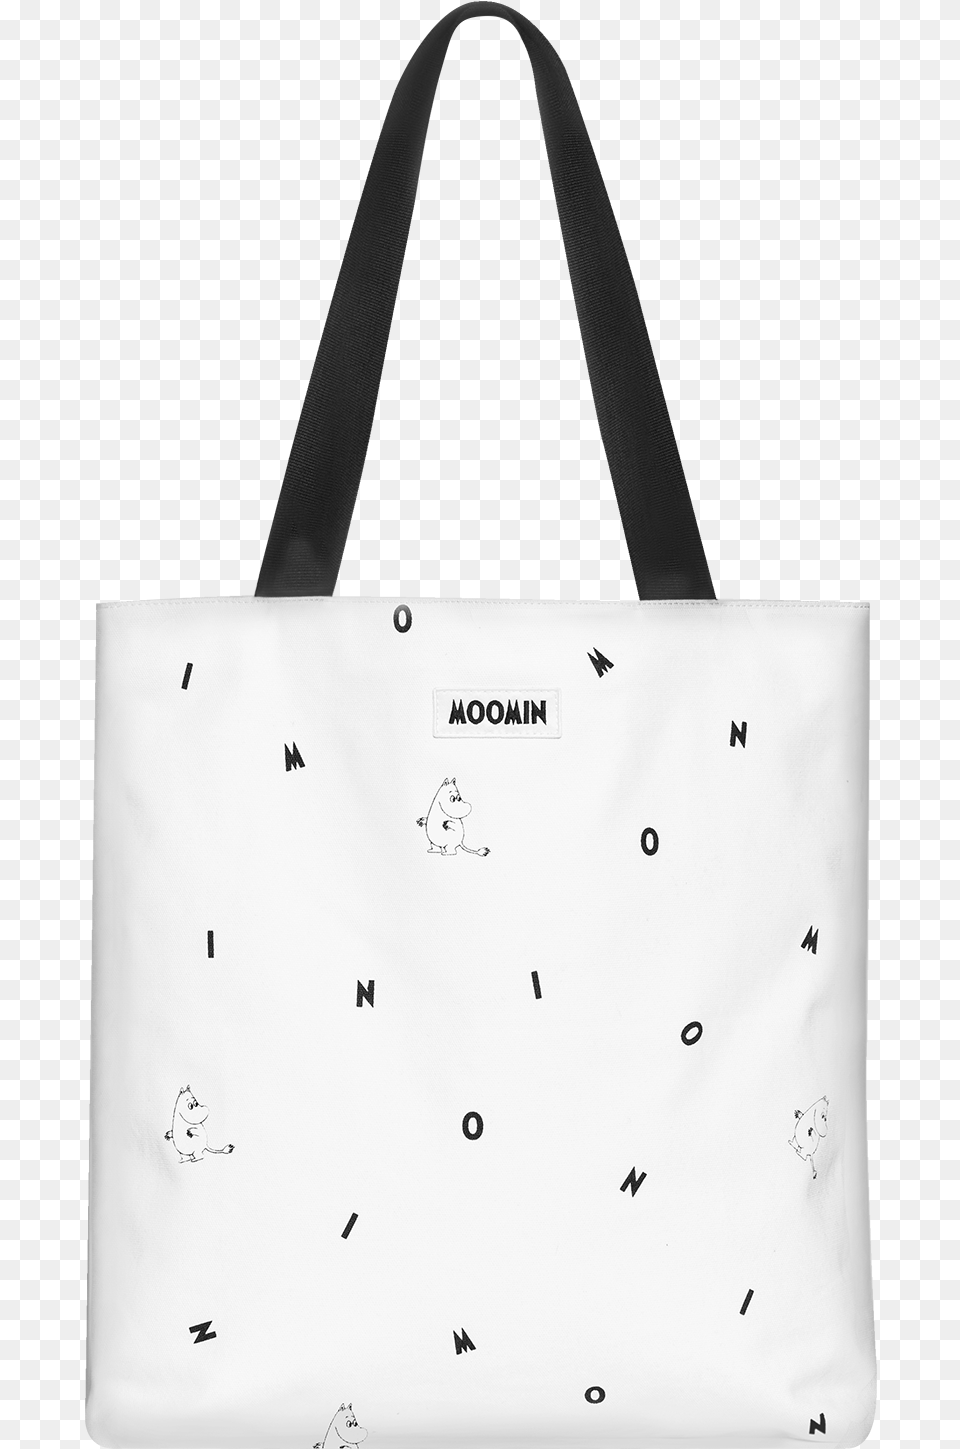 Moomin Drawstring Bag Black Icons Moomin Shopper Bag Tote Bag, Accessories, Handbag, Tote Bag, White Board Png Image